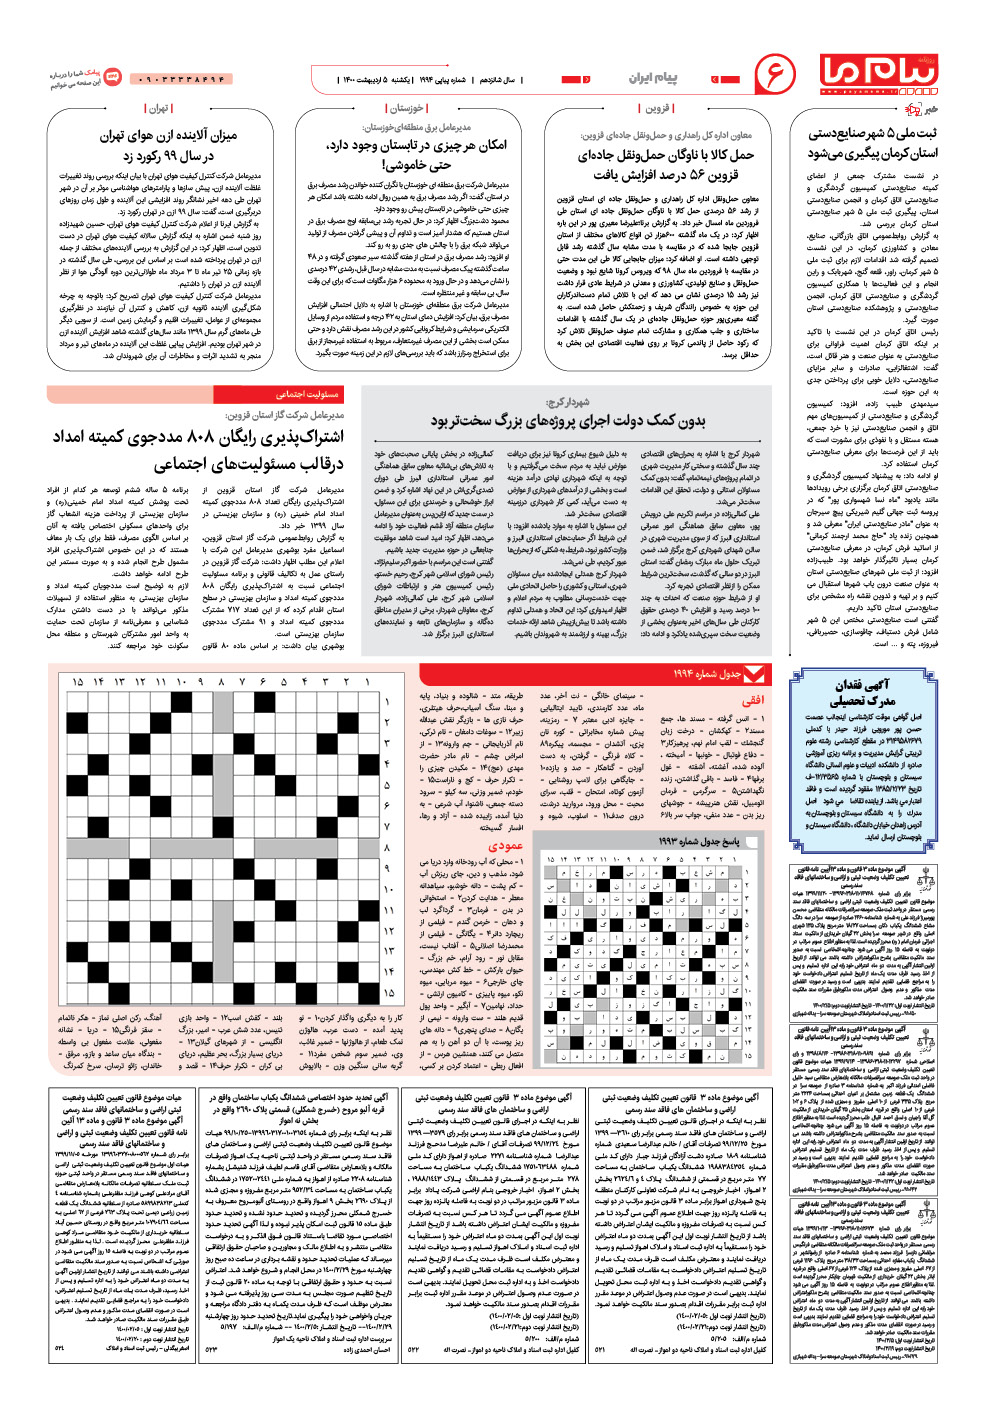 صفحه پیام ایران شماره چارسوق روزنامه پیام ما